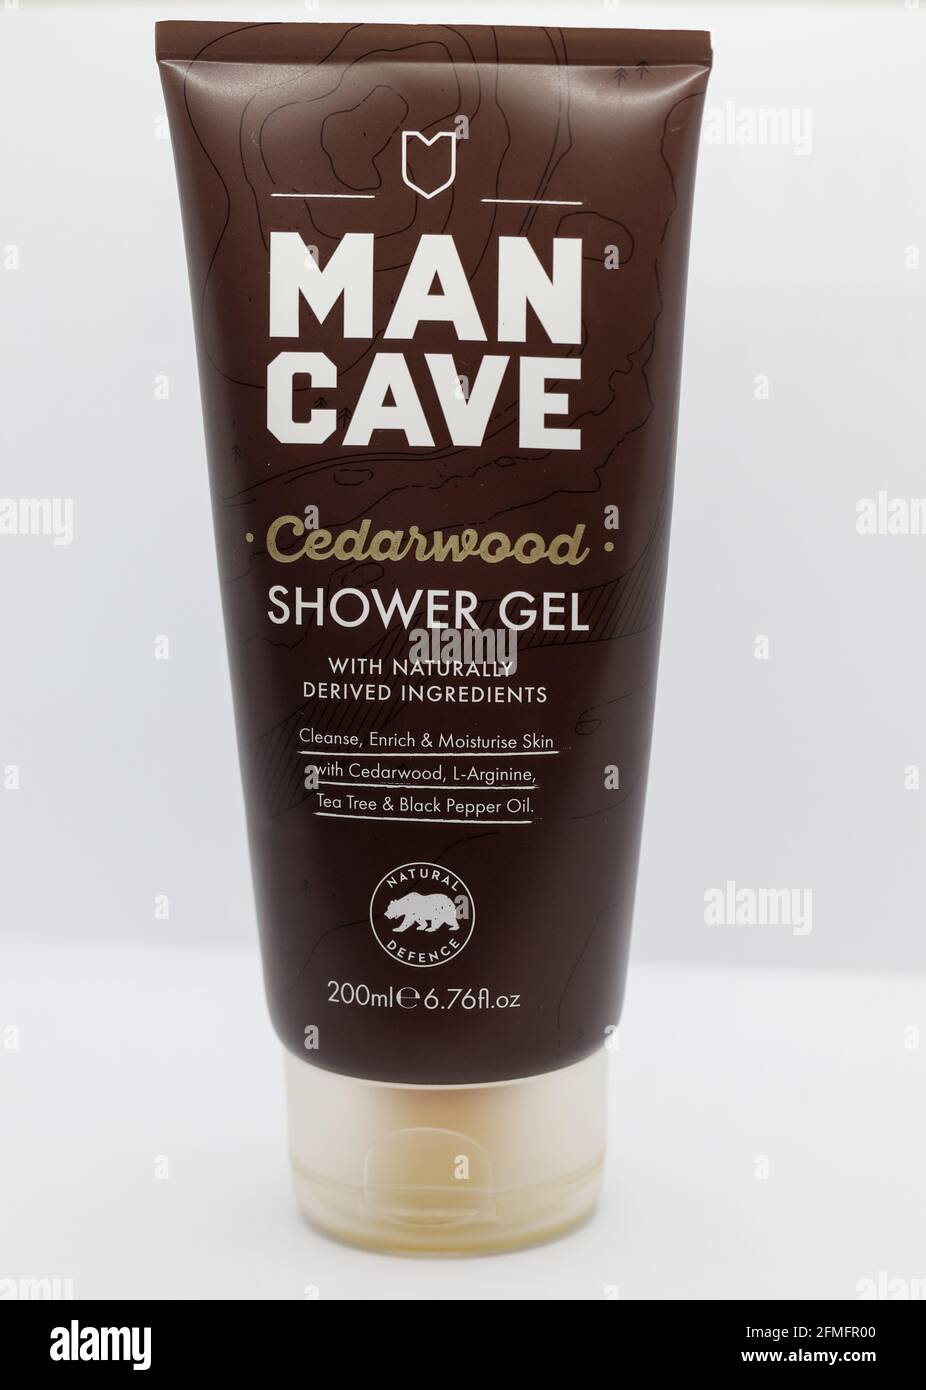 CHESTER, GROSSBRITANNIEN: 1. MAI 2021: Man Cave ist eine beliebte Hautpflegemarke für Männer, die in Großbritannien häufig anzutreffen ist. Abgebildet ist das Zedernholz-Duschgel Stockfoto